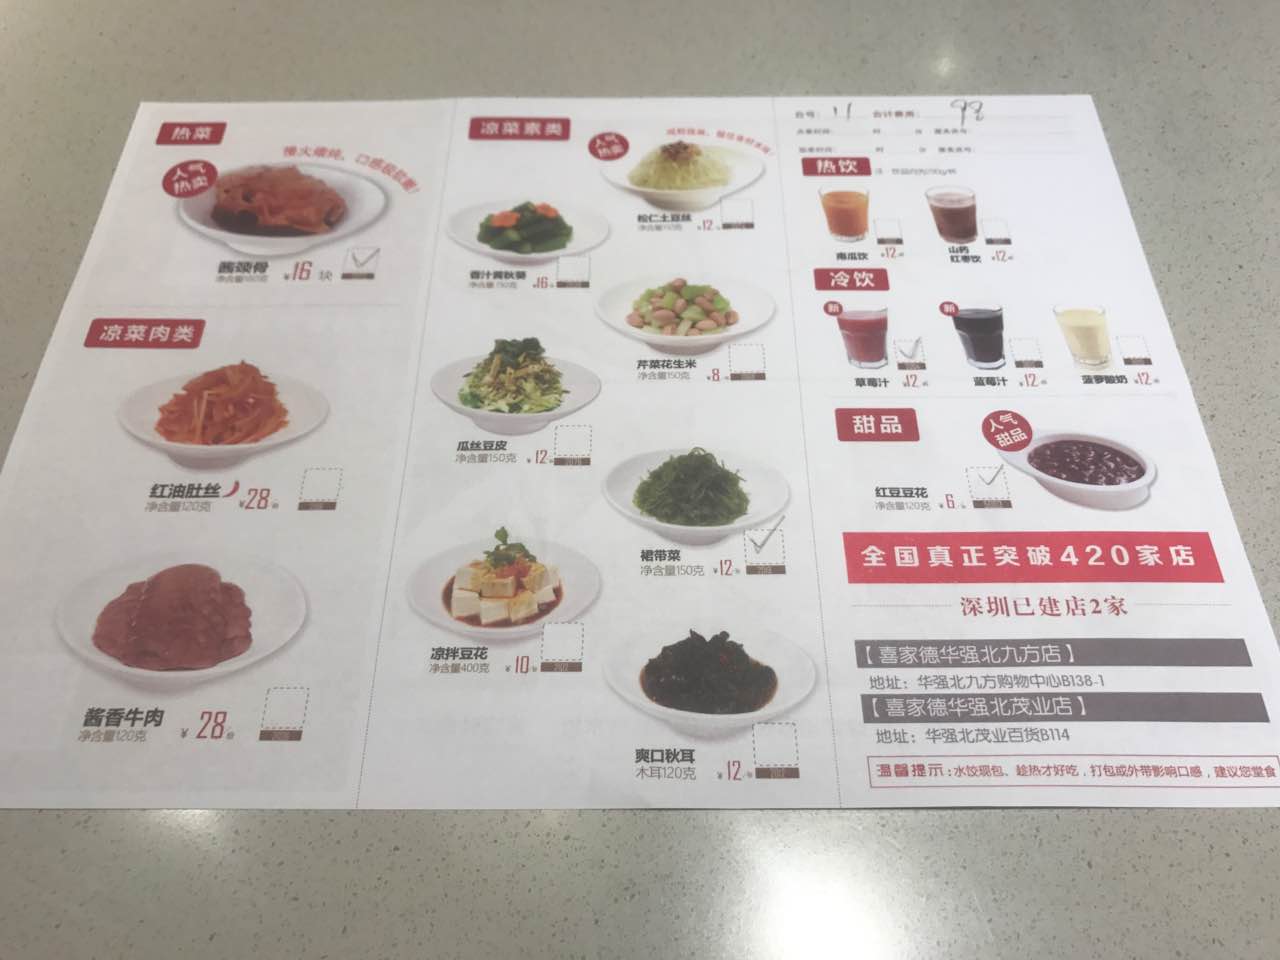 2021喜家德虾仁水饺(华强天虹店)美食餐厅,终于在深圳发现了家乡的